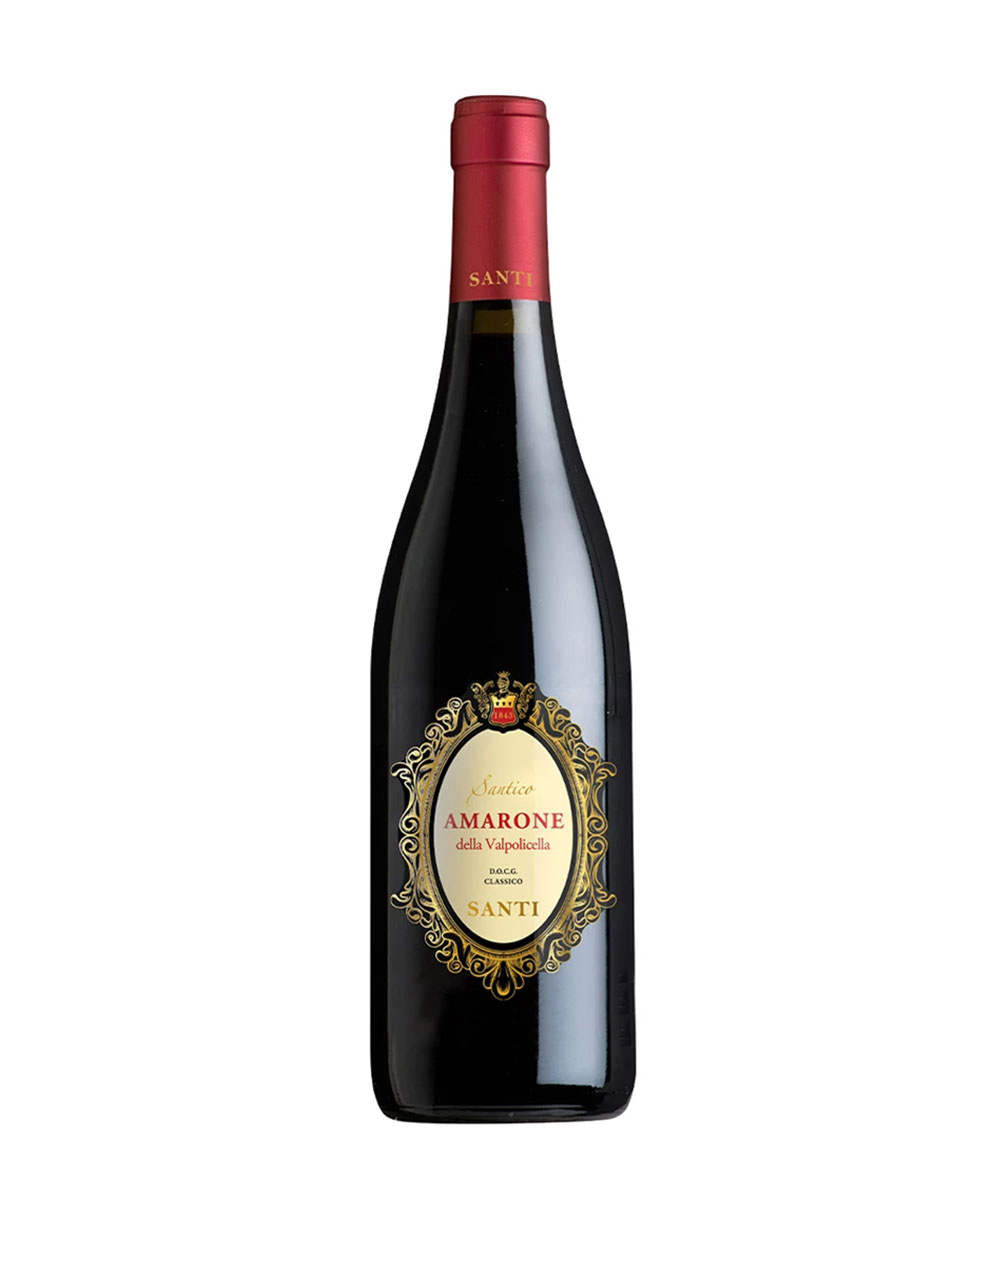 Santi Santico Amarone della Valpolicella 2015 DOCG Classico Italy Red wine